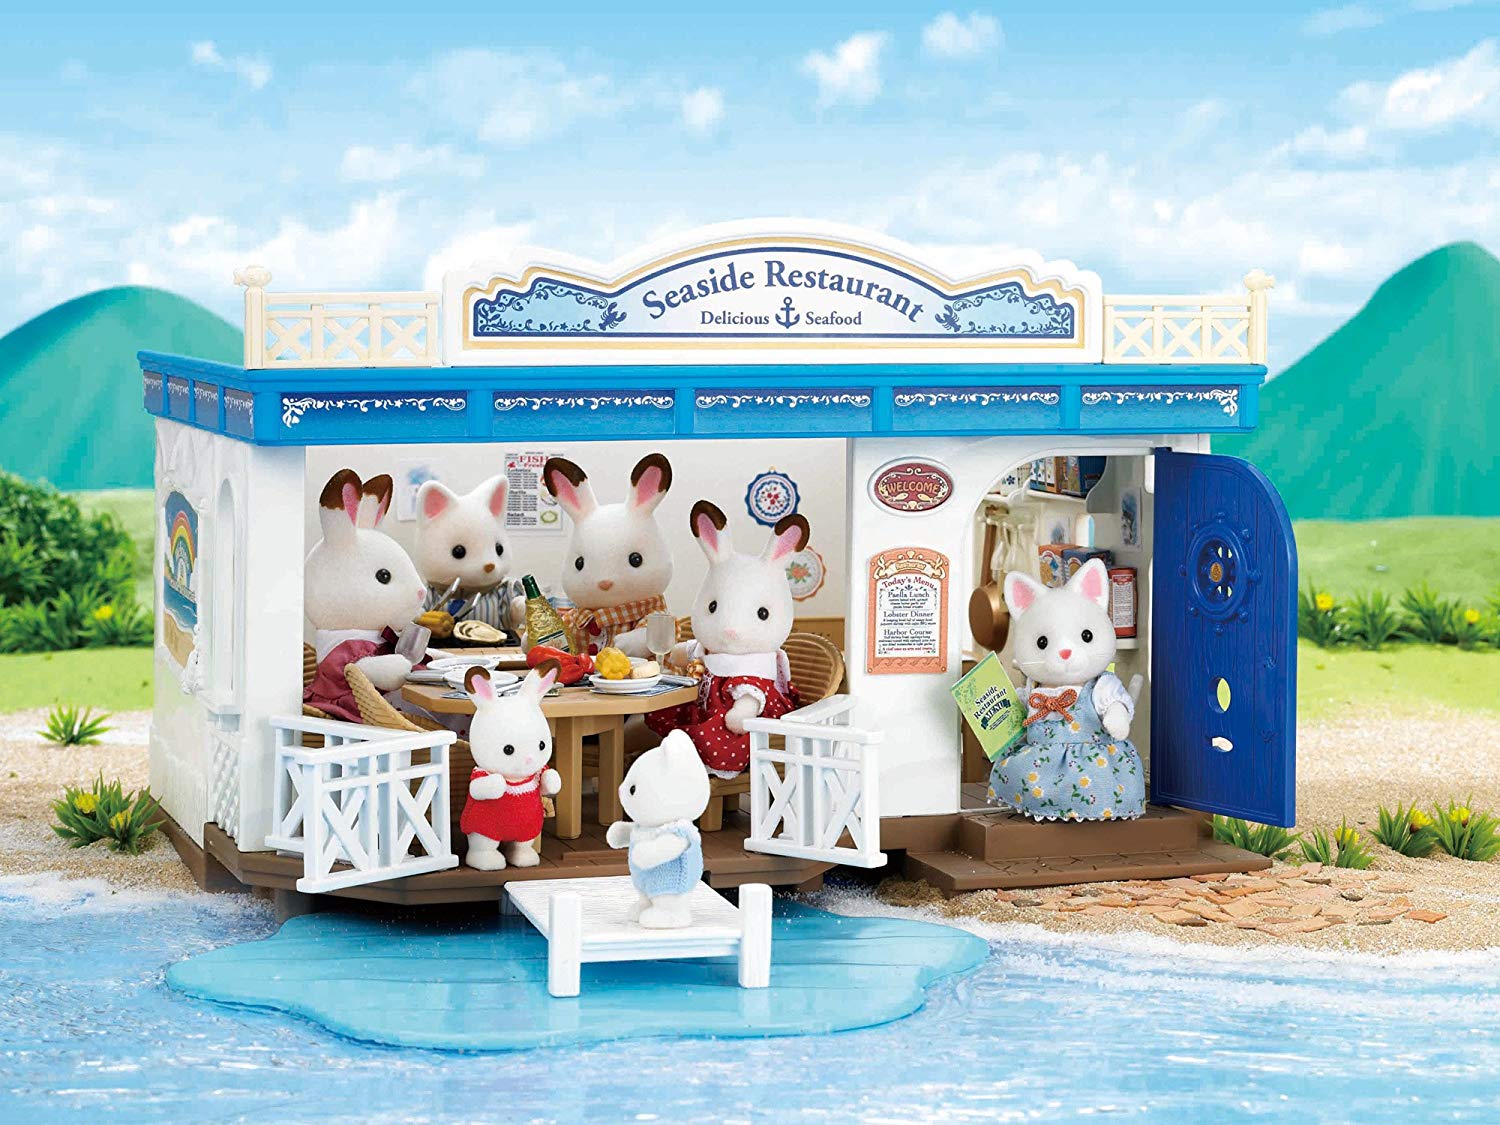 【楽天市場】【特価】エポック社 シルバニアファミリー 海辺のすてきなレストラン Seaside Restaurant お人形セット 海外